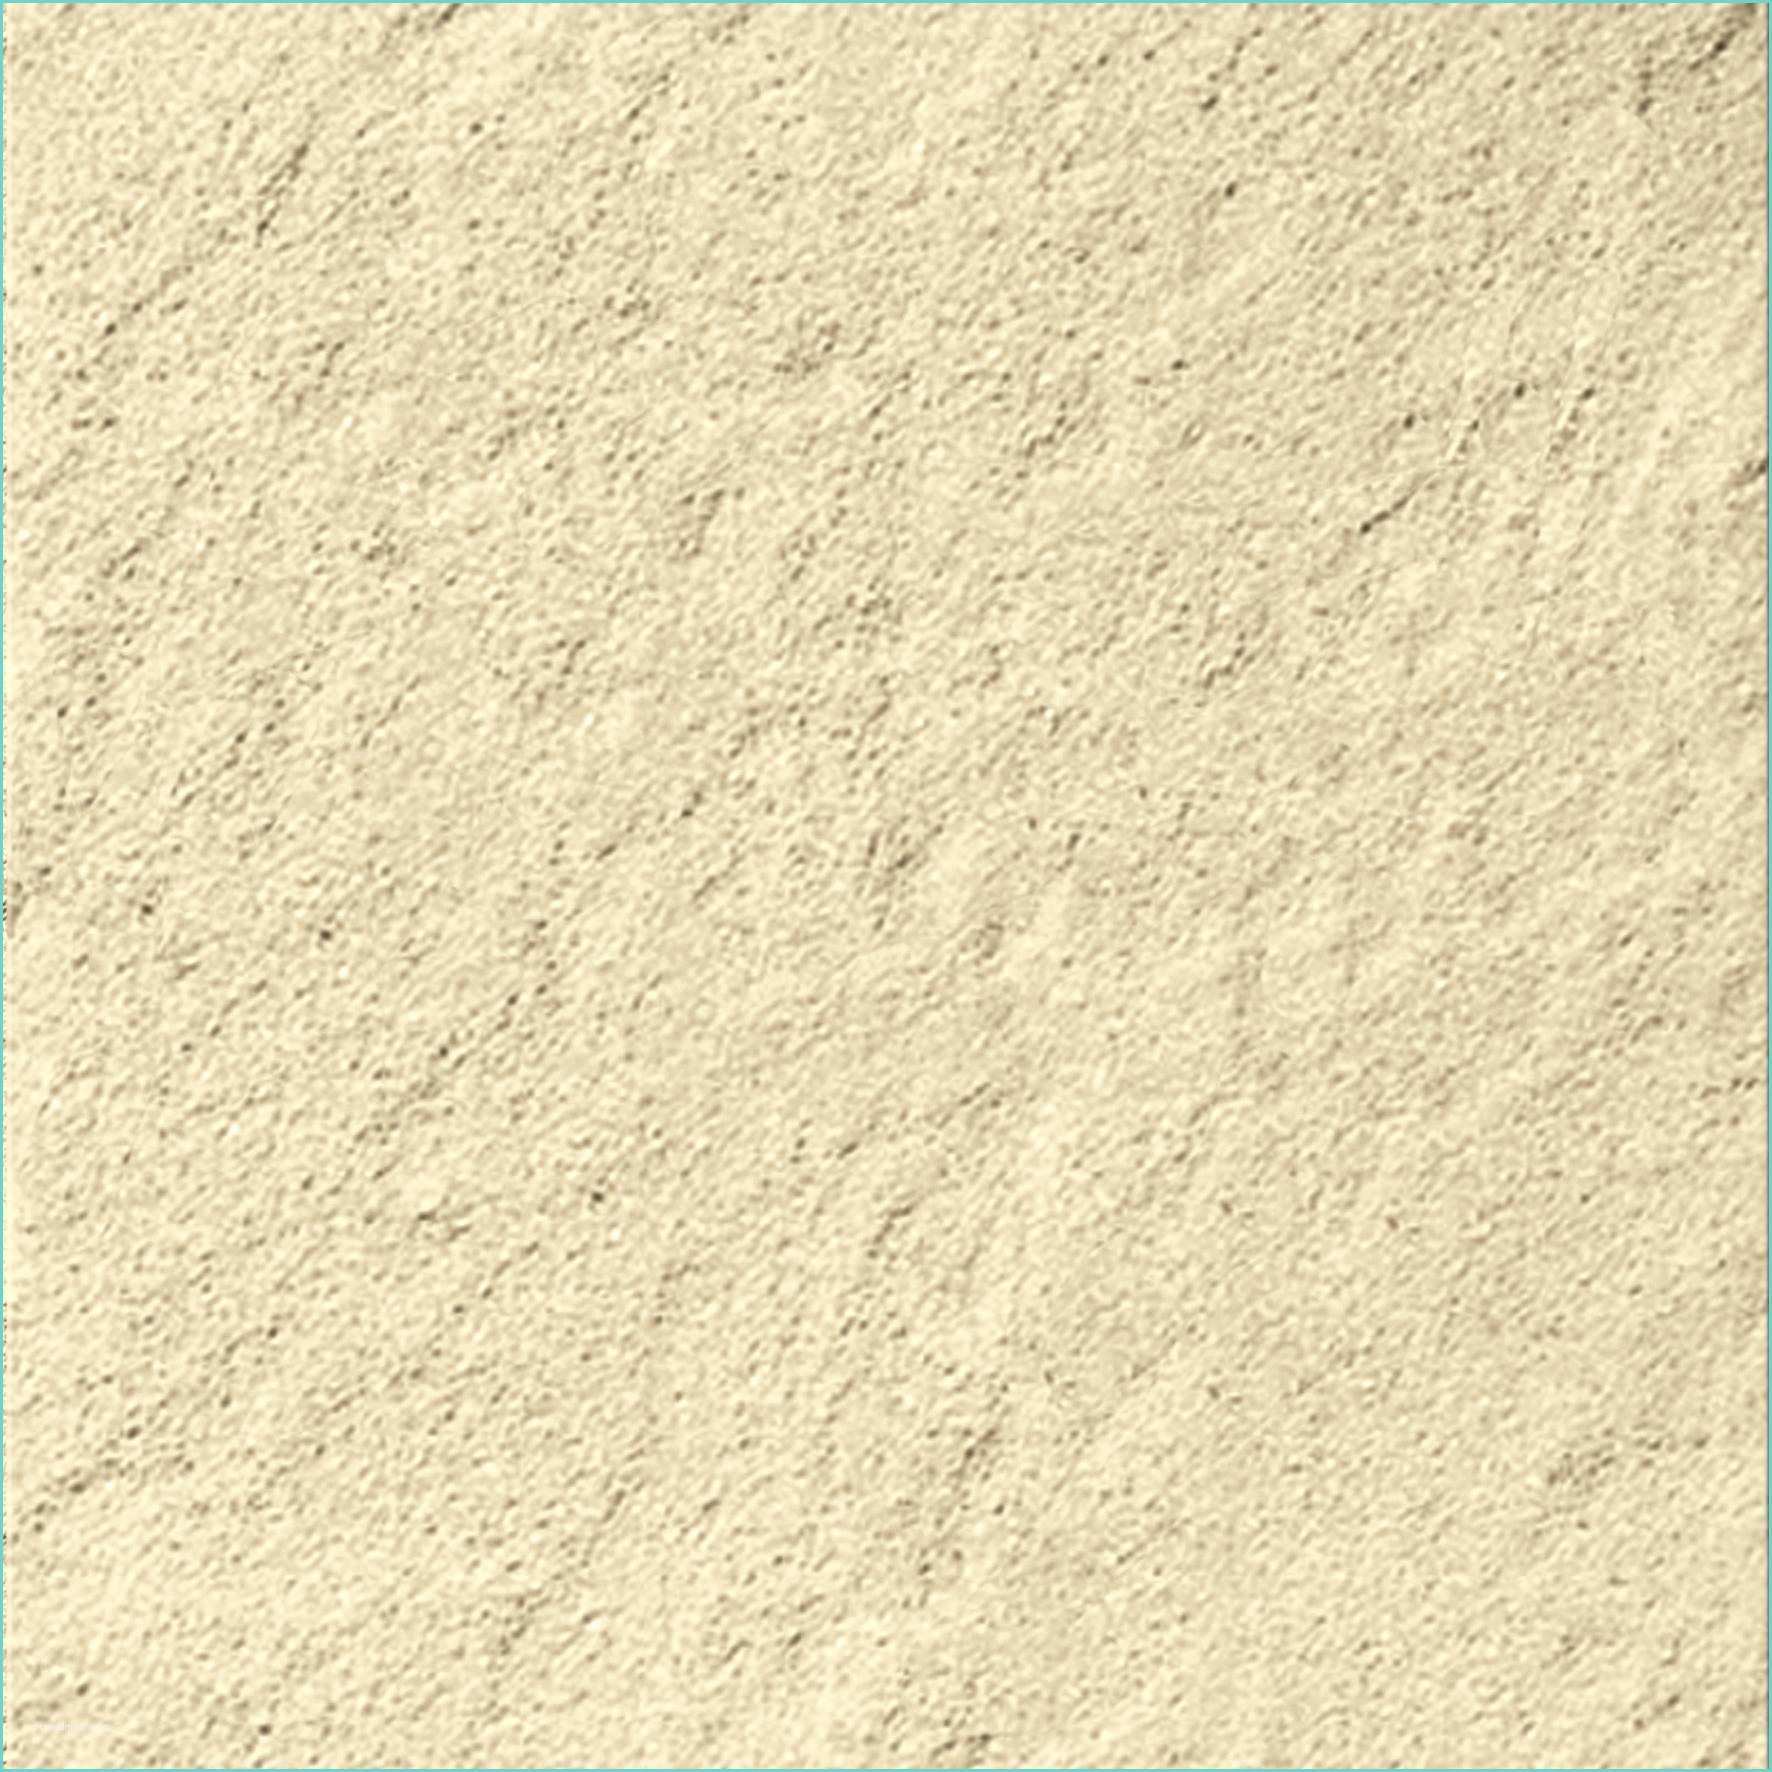 Texture Pavimentazione Esterna Cemento Piastrellone Rustica Martellinata Gialla 40x40x4 Cm 6 25